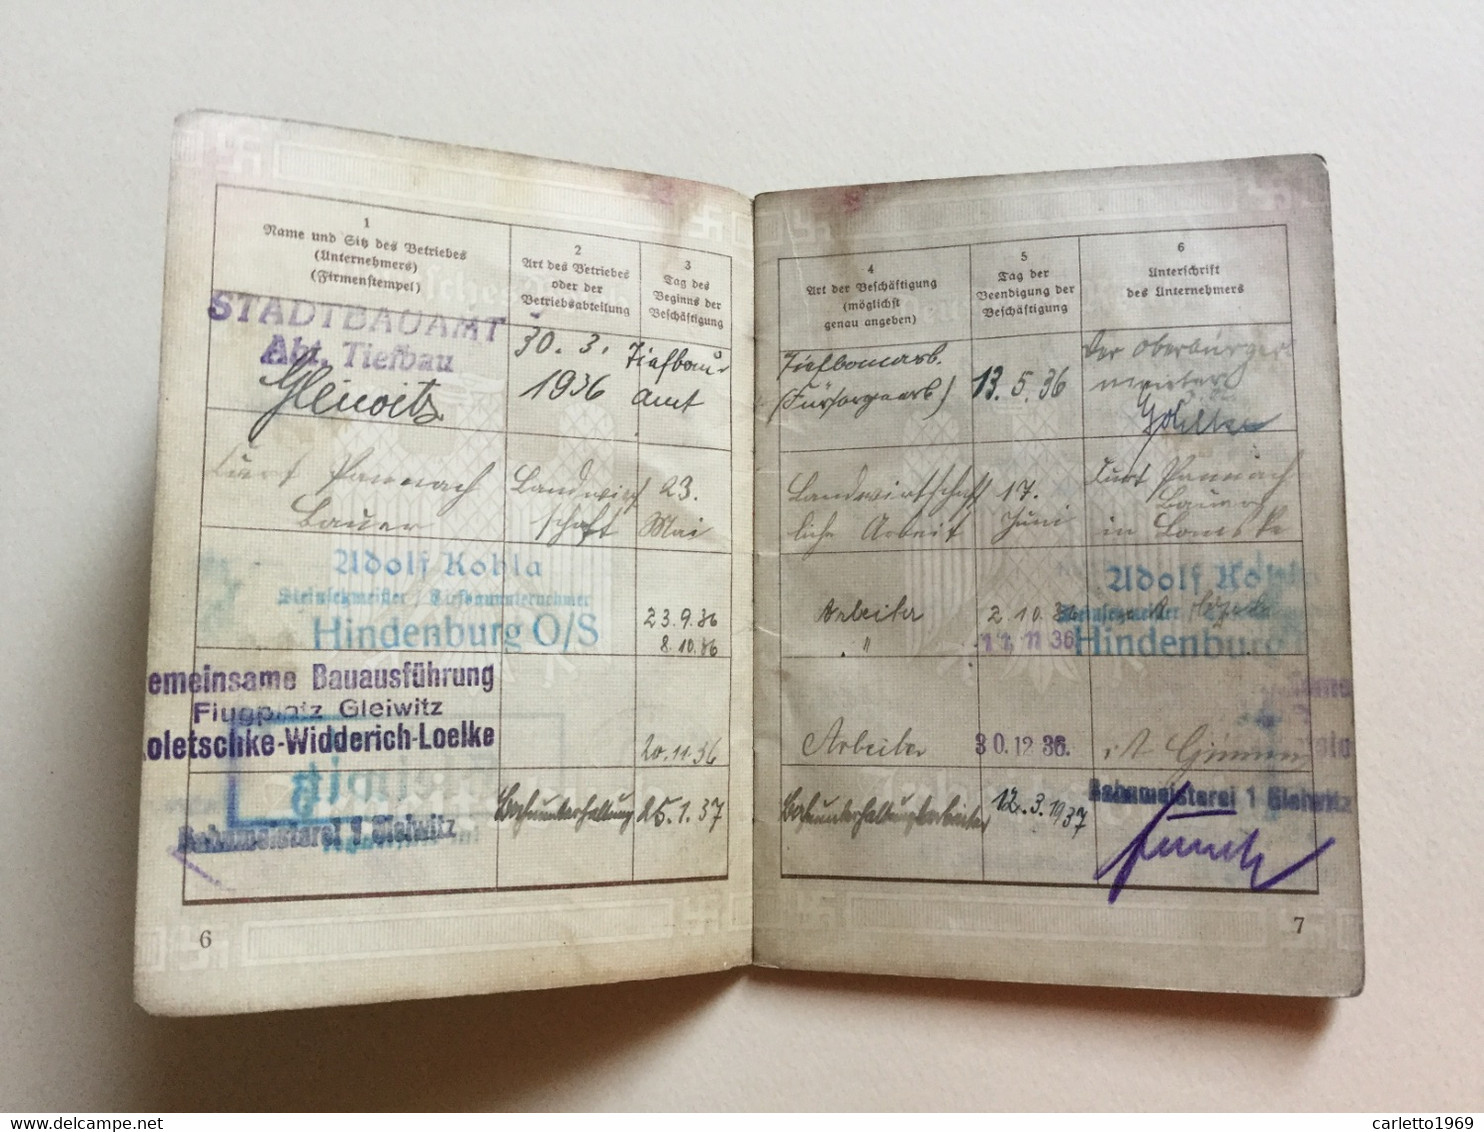 ARBEITSBUCH GLEIWITZ 1936 - EINLAGEBLATT FÜHRERSCHEIN 1938 - REICHSTLEIDERKARTE 1940 - Documenti